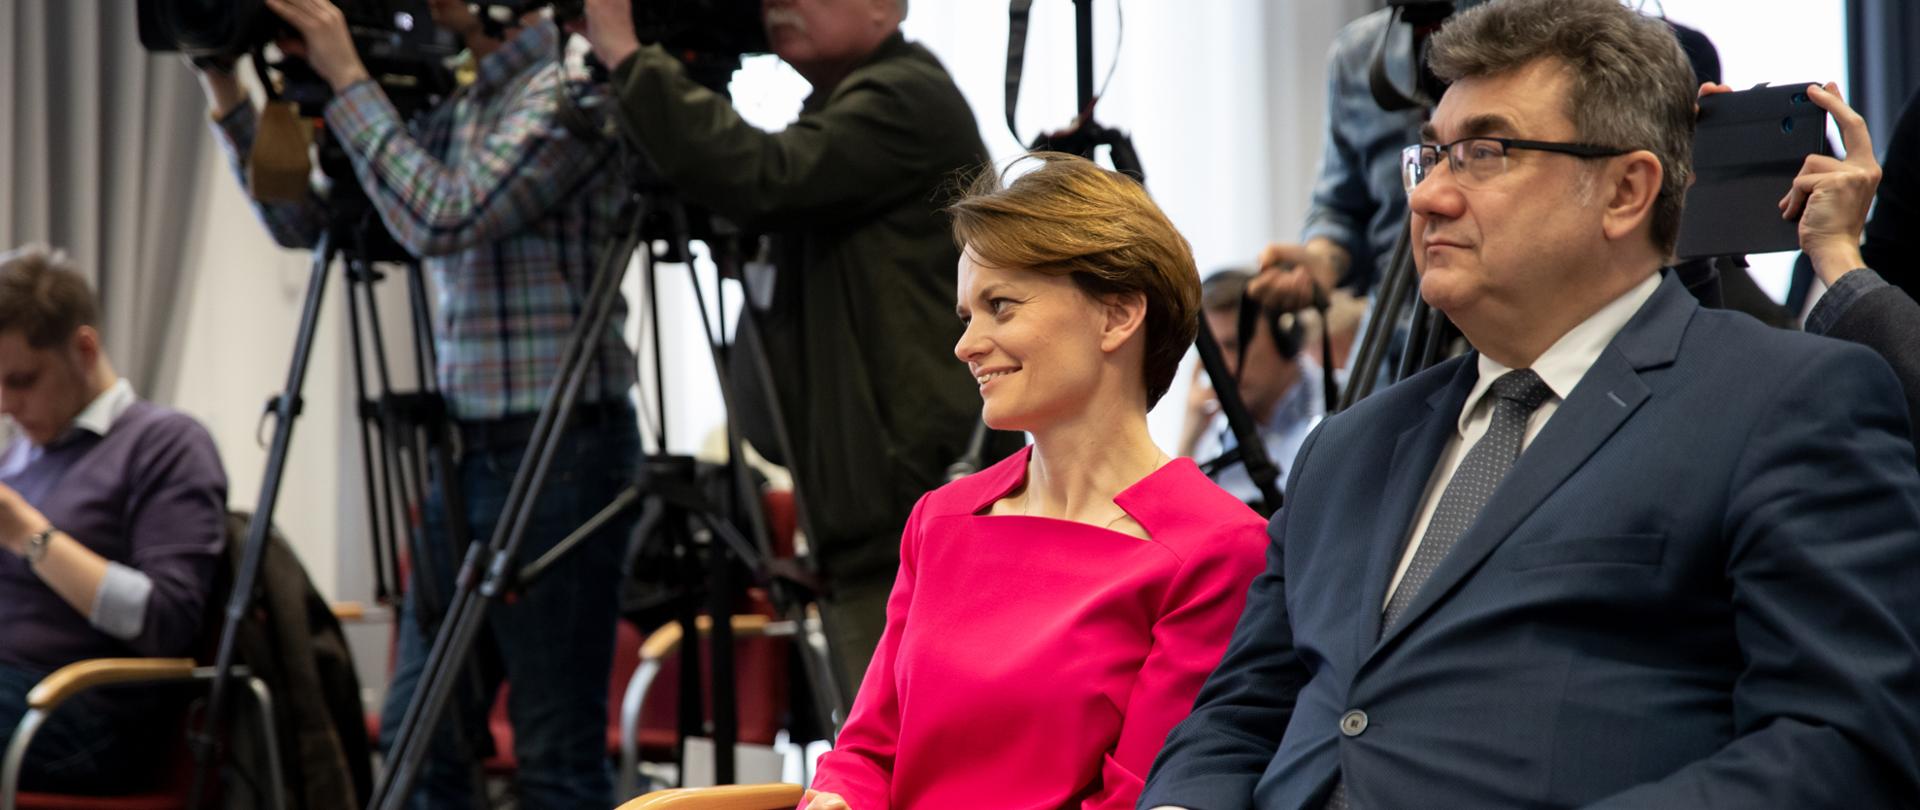 Minister Jadwiga Emilewicz i wiceminister Grzegorz Tobiszowski siedzą w pierwszym rzędzie podczas konferencji prasowej, w tle kamery. 